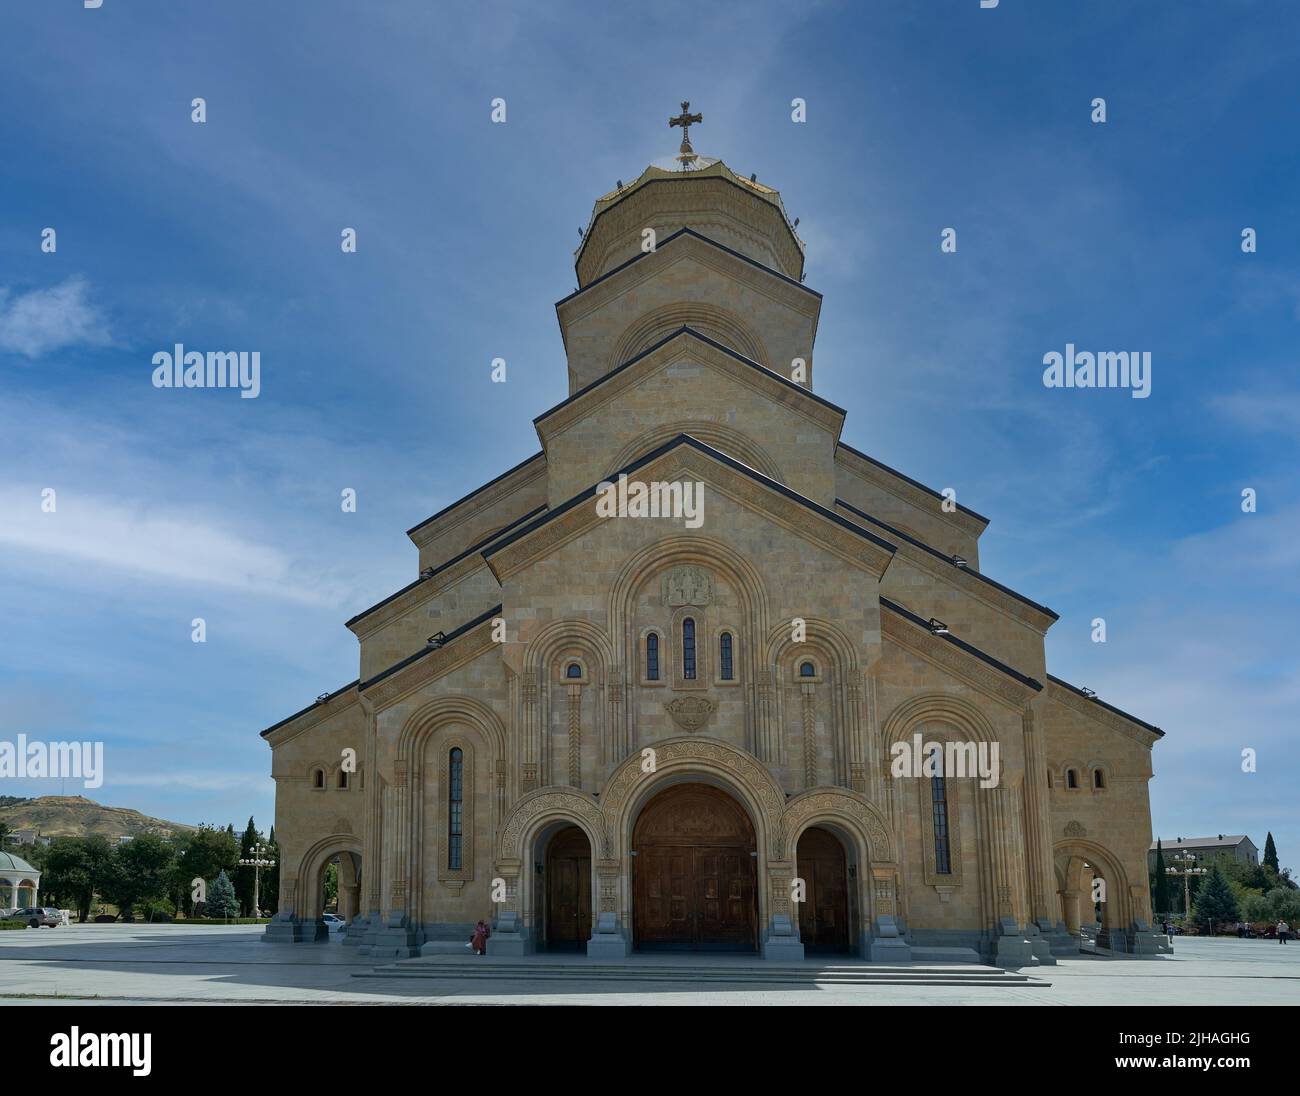 La Cattedrale della Santissima Trinità di Tbilisi, Georgia, con vista esterna della luce del giorno che mostra l'architettura unica della cattedrale con persone che camminano sulle scale Foto Stock